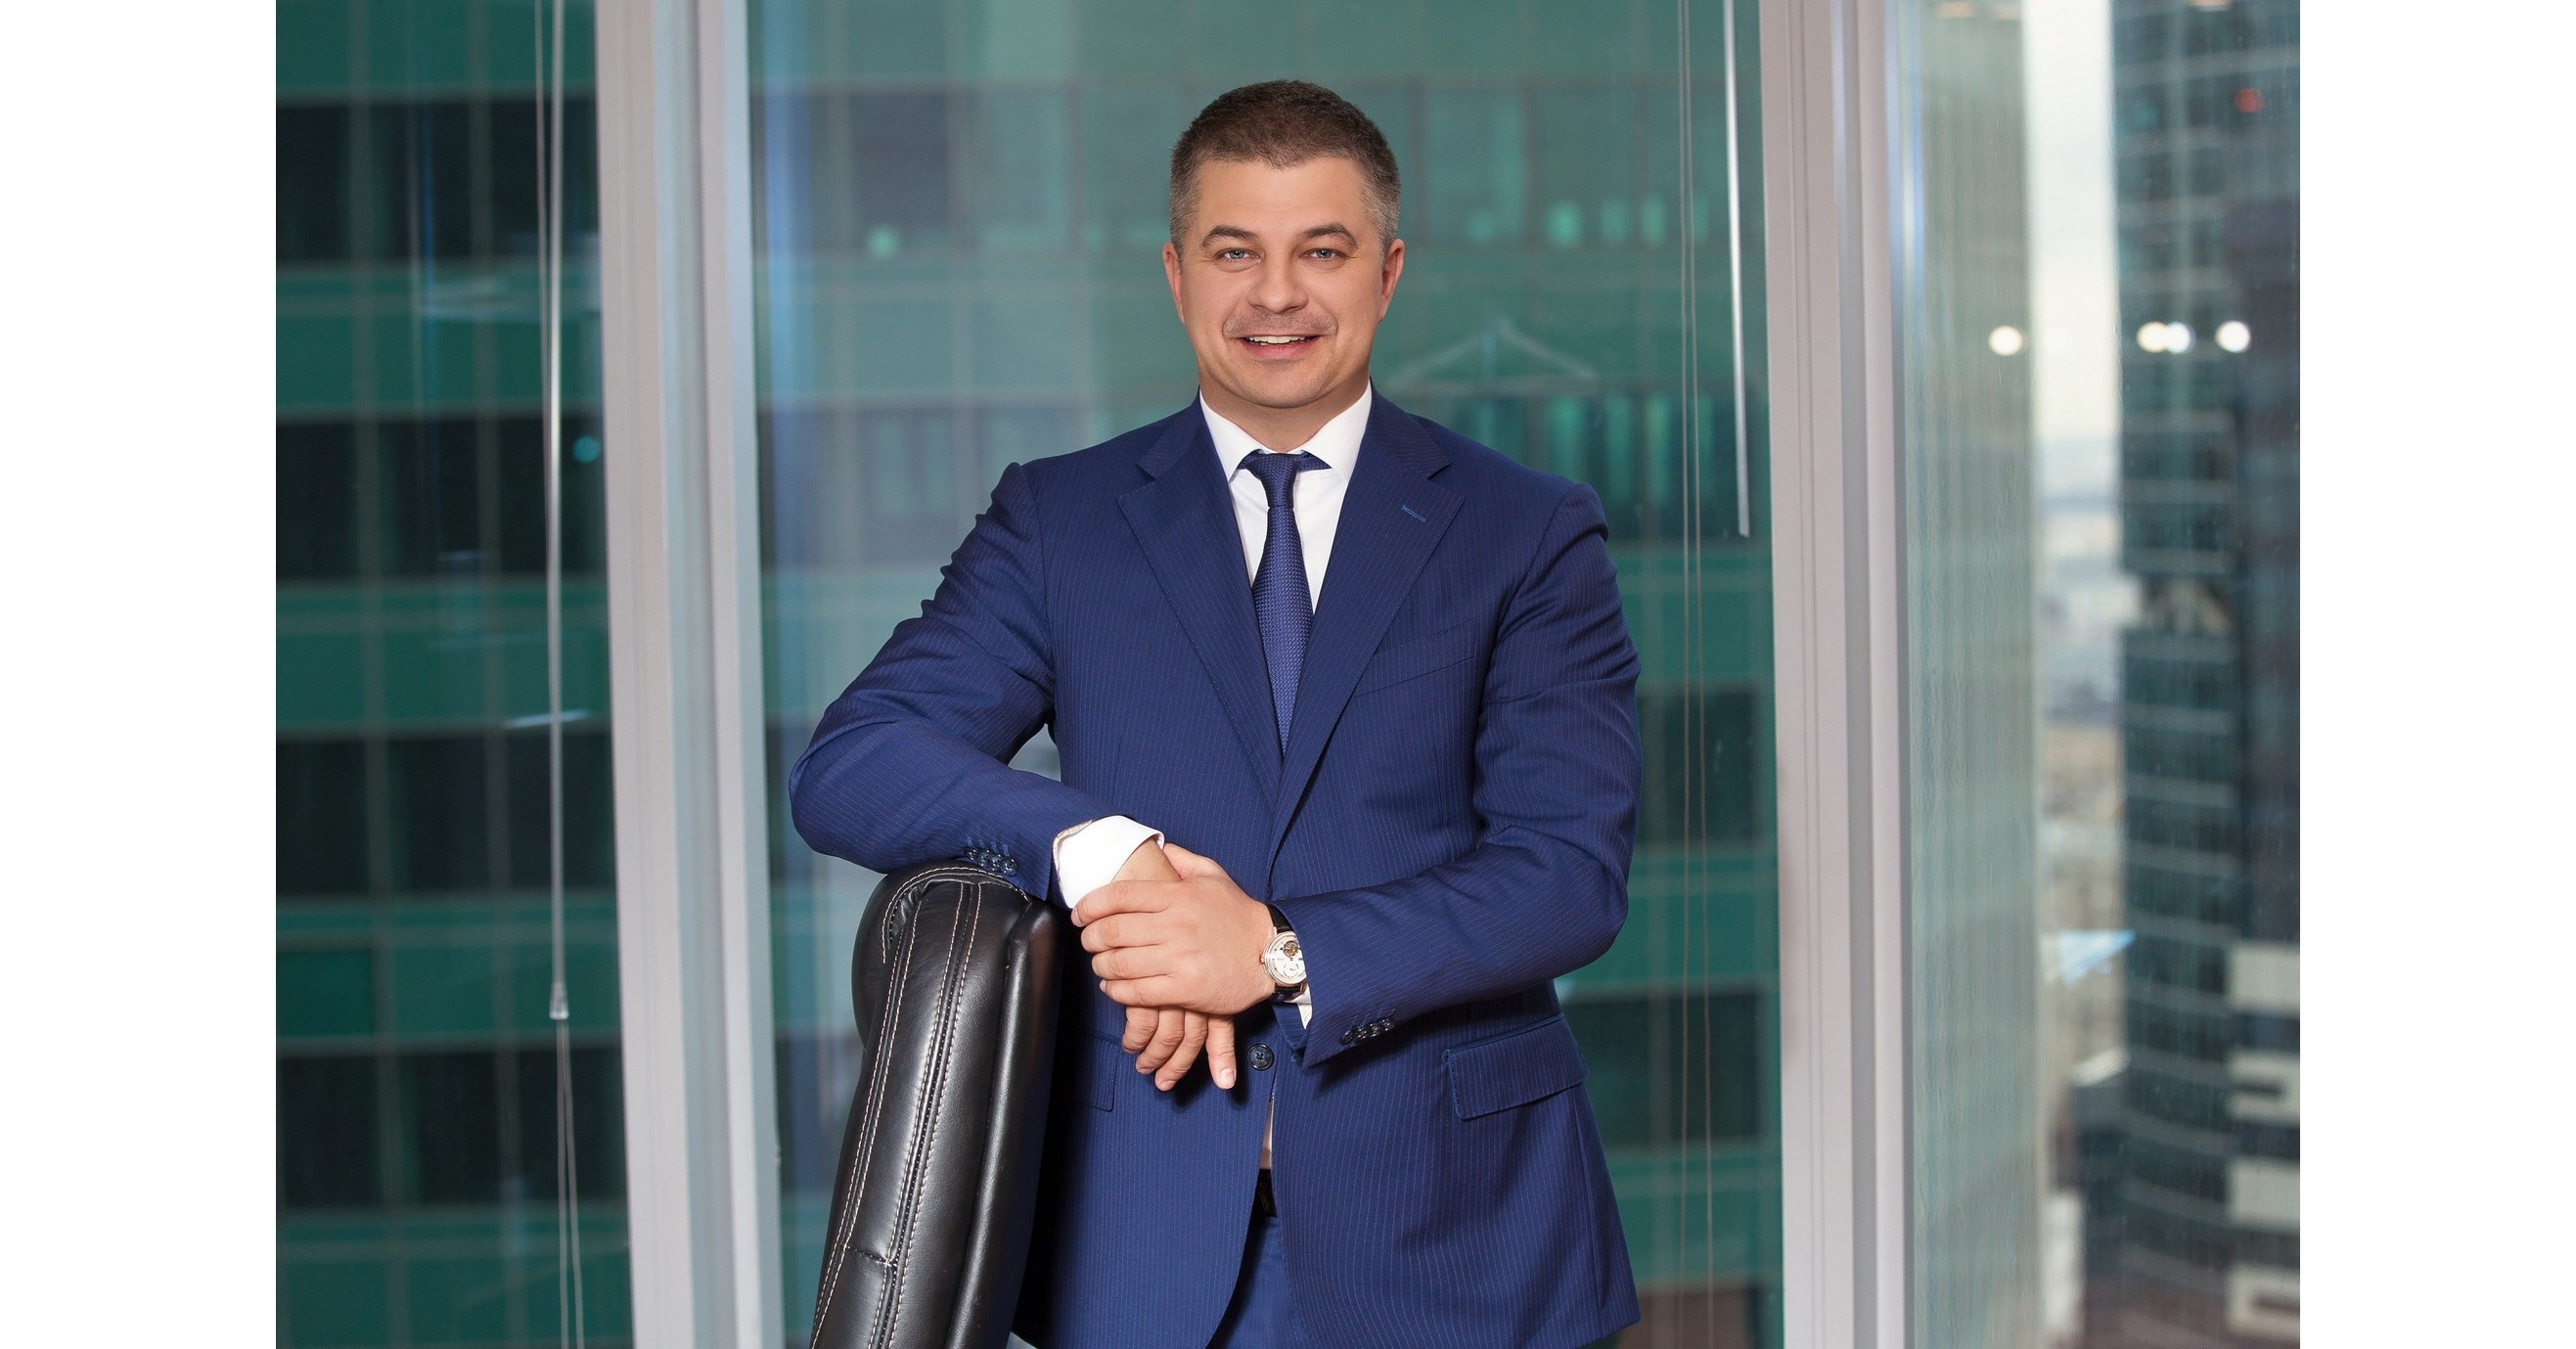 Gediminas Ziemelis, Ιδρυτής και Πρόεδρος του Avia Solutions Group: 2020